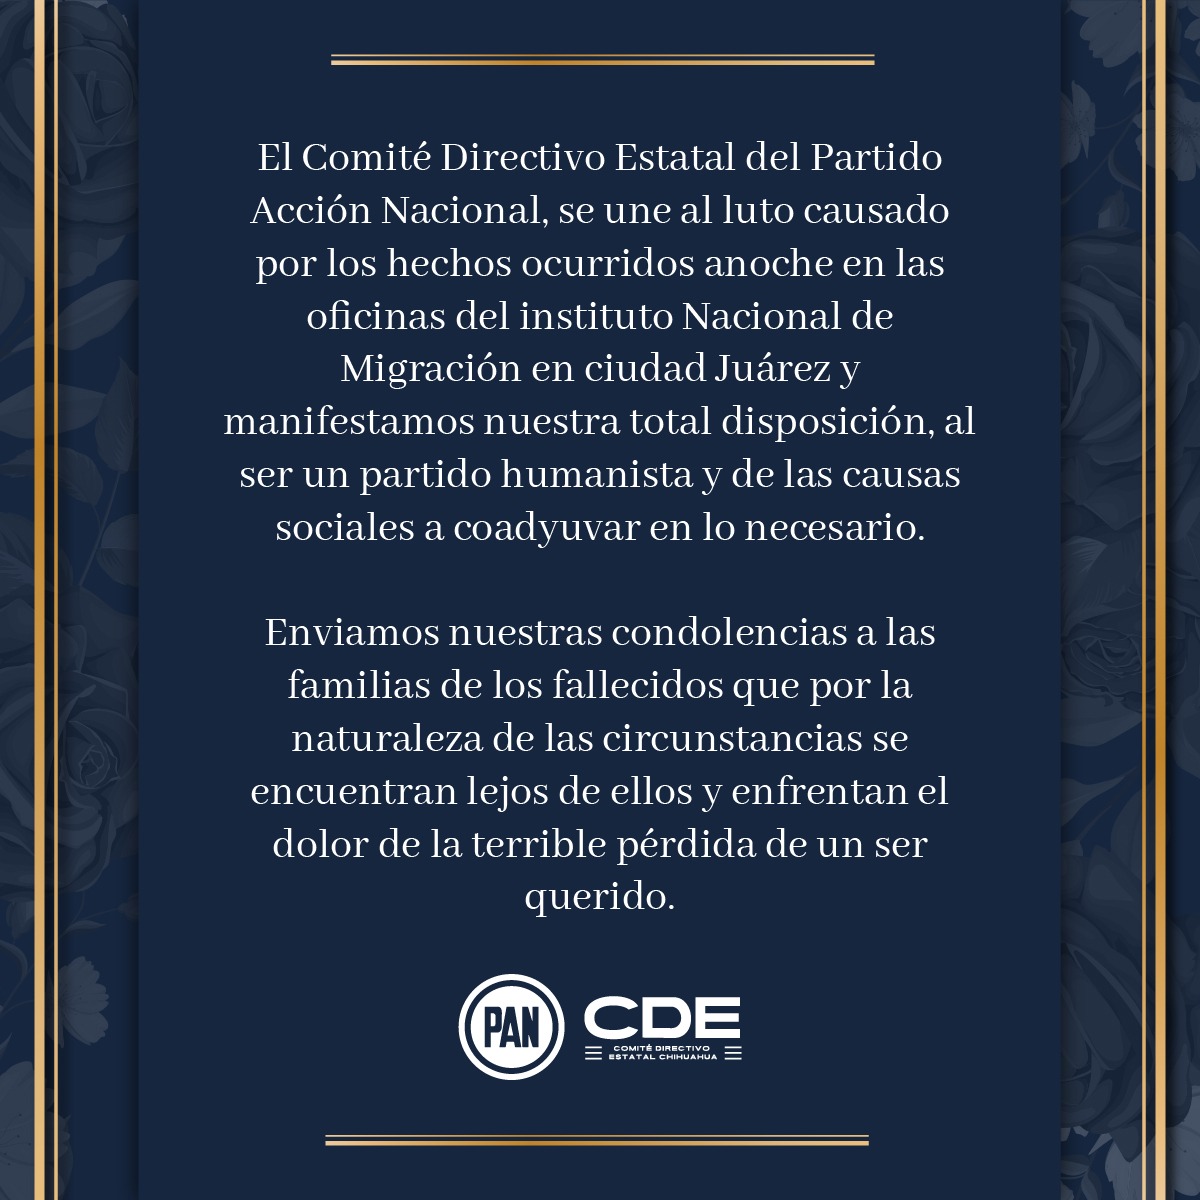 CDE lamenta profundamente hechos en oficinas del INM en Juárez